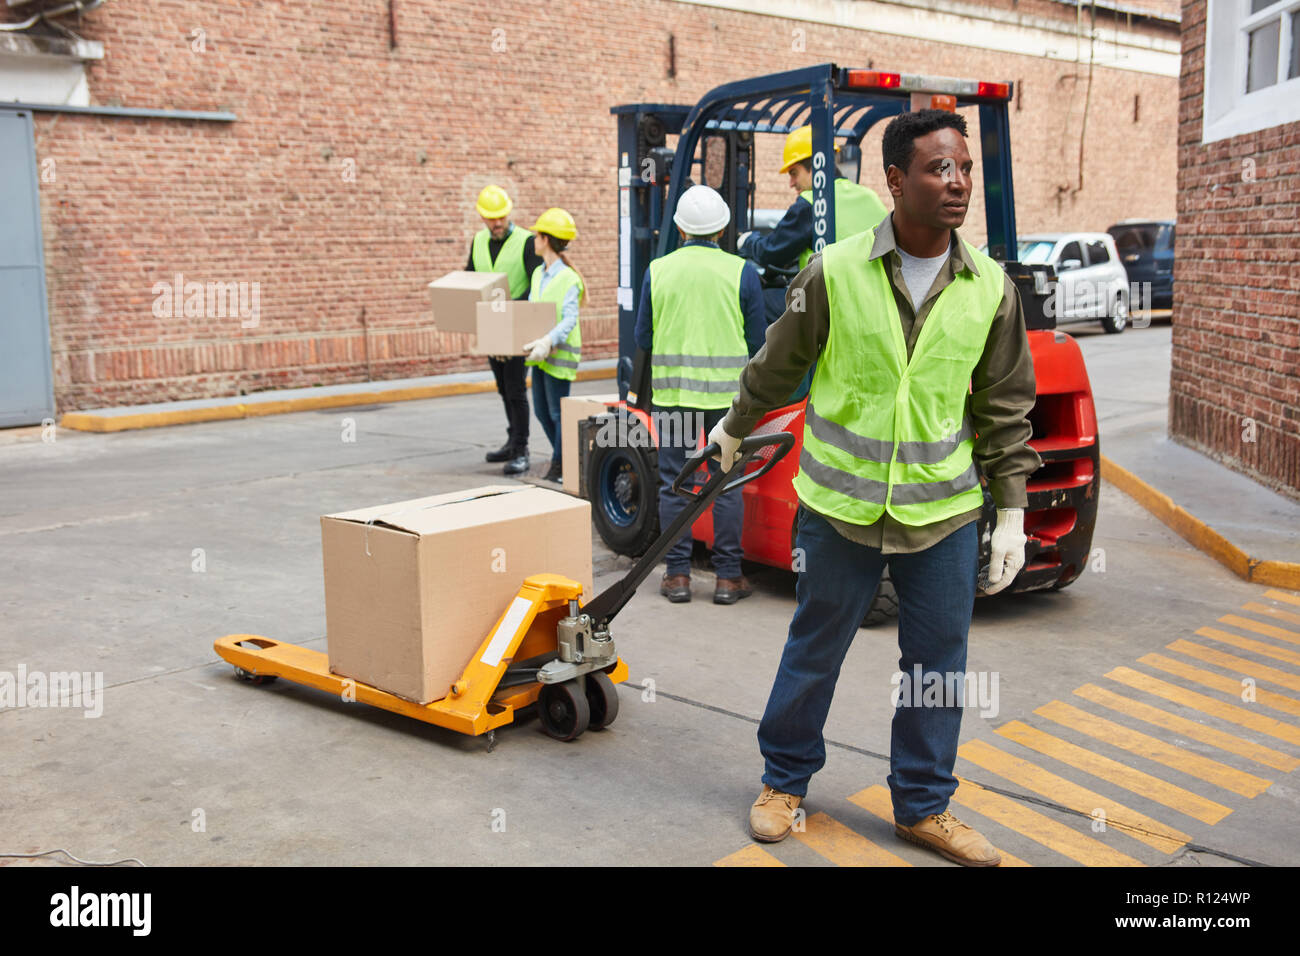 Afrikanische Arbeiter vor dem Logistikzentrum mit Paket auf der Palette Lkw Stockfoto